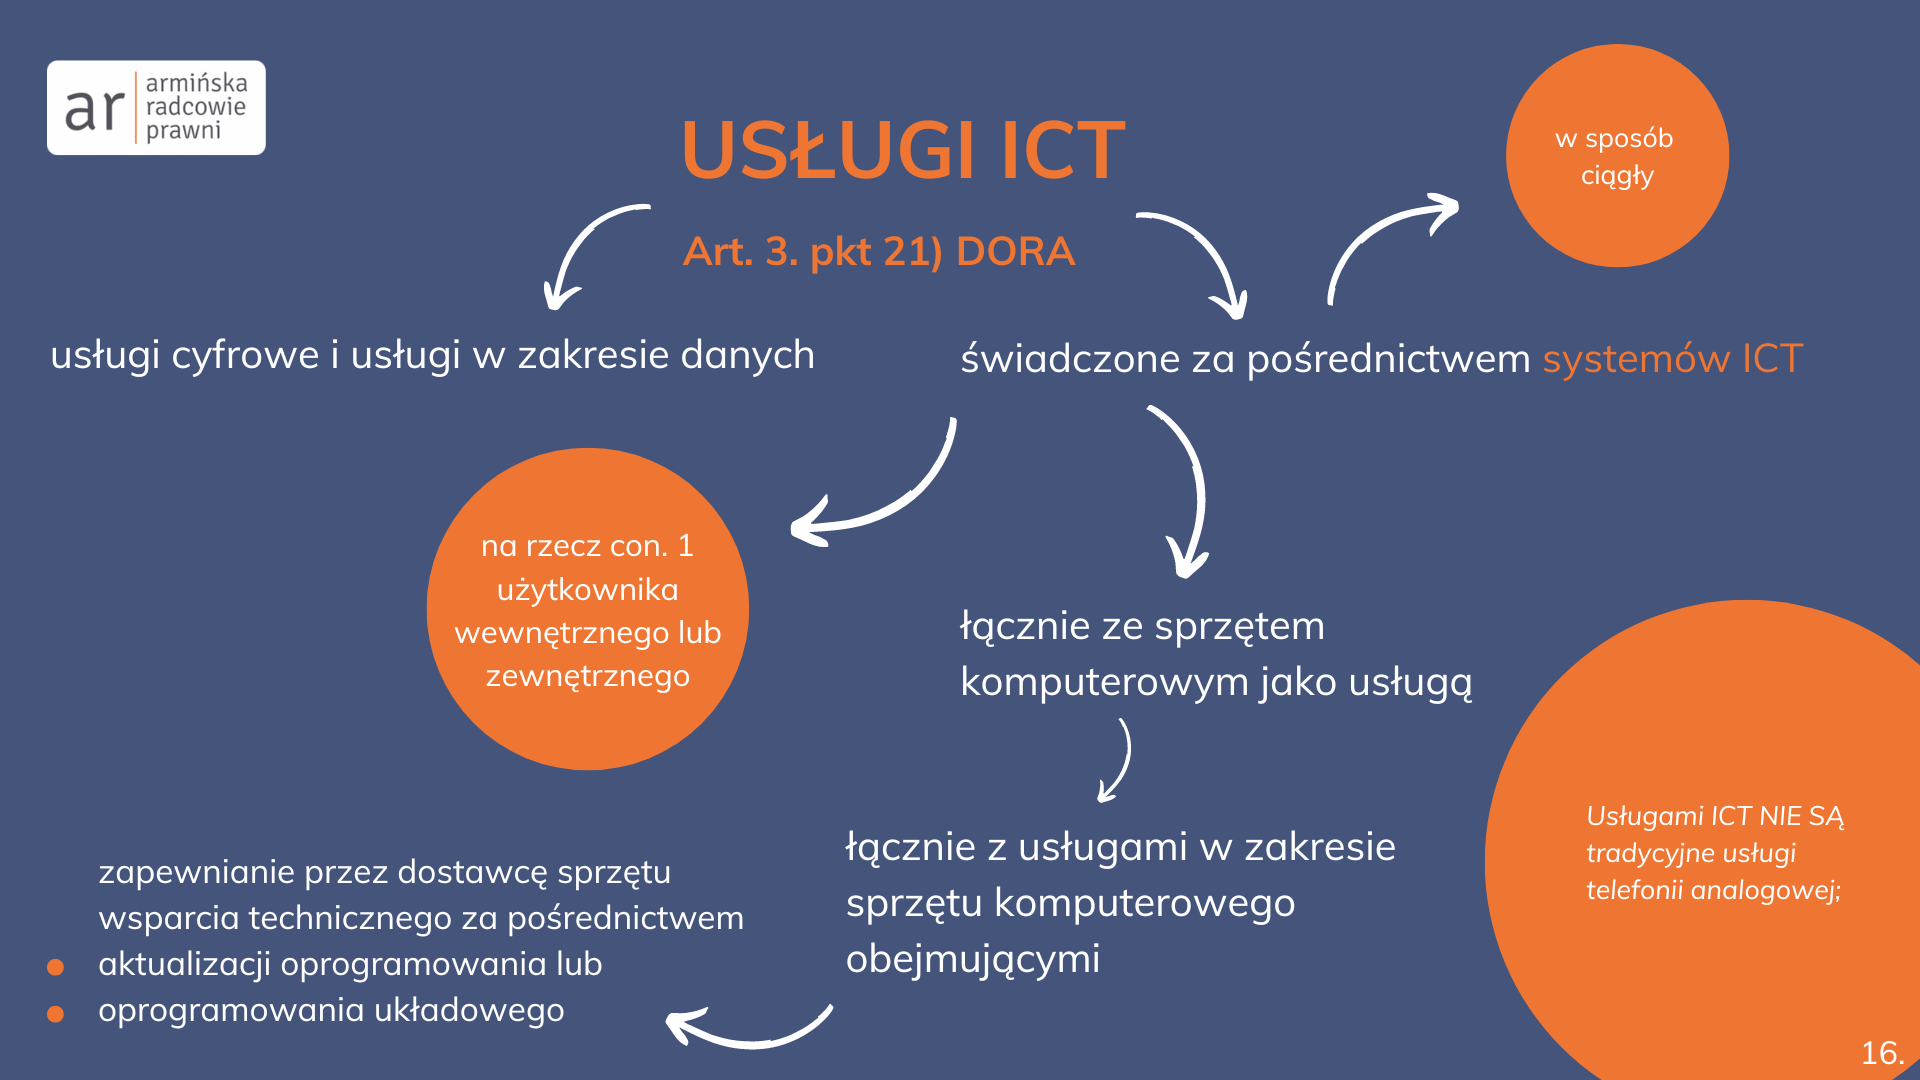 Usługi ICT definicja grafika do wpisu armińska radcowie prawni